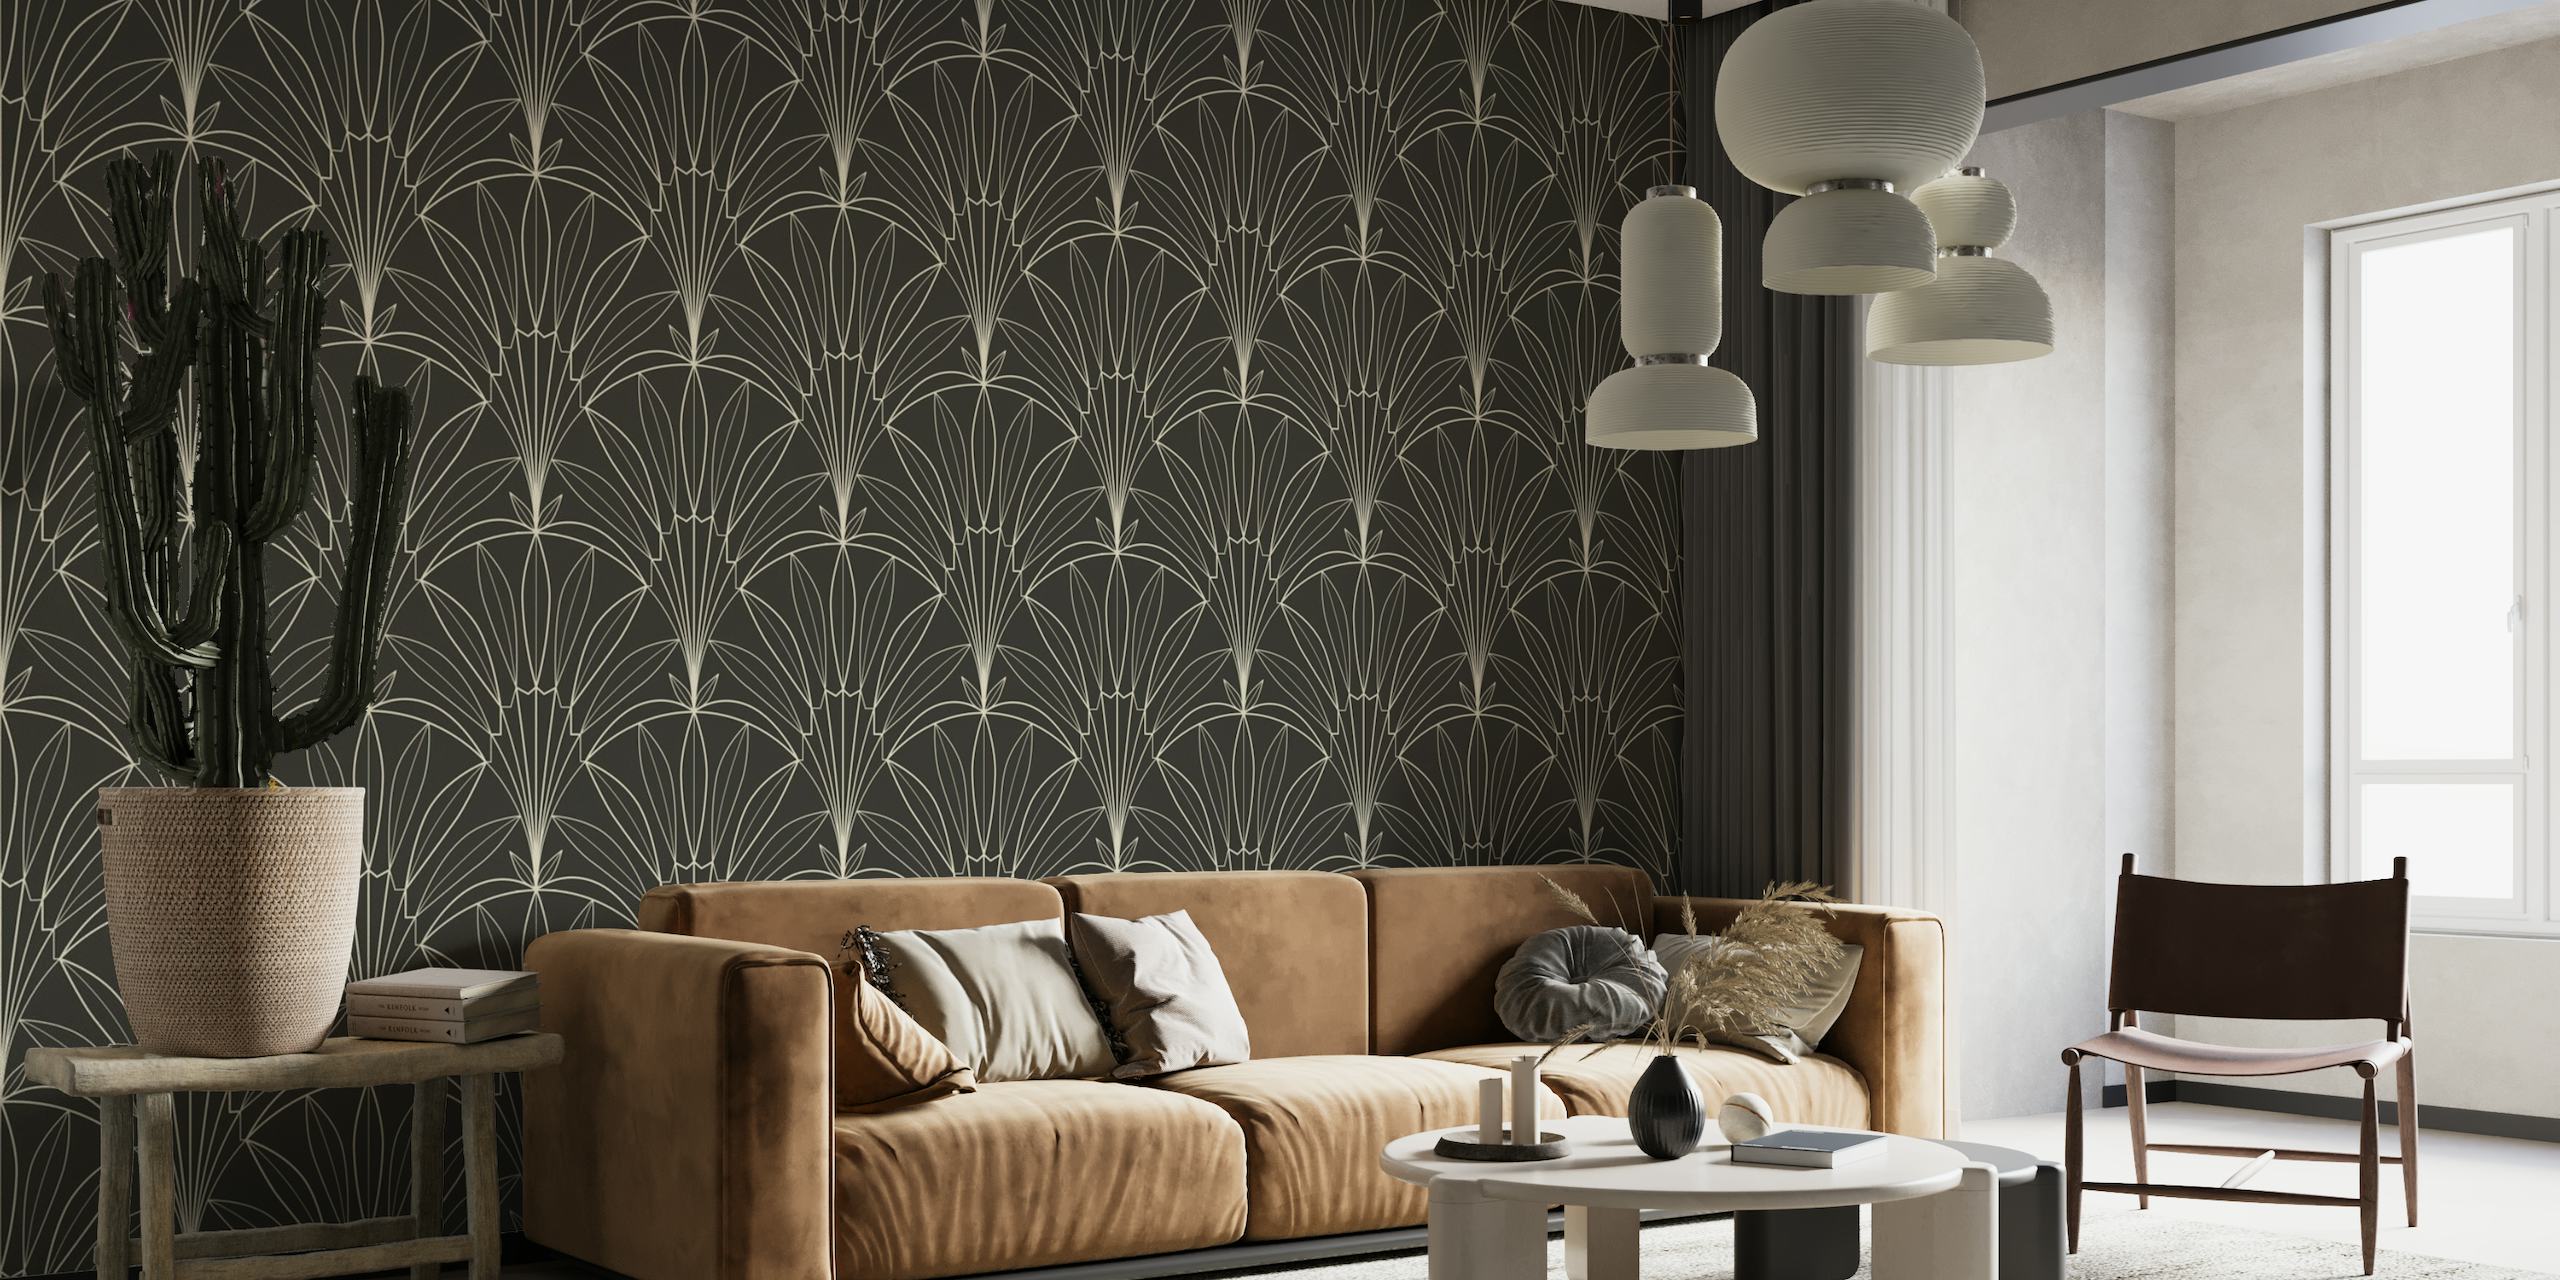 Outline Art Deco palm leaves fan pattern on black wall mural